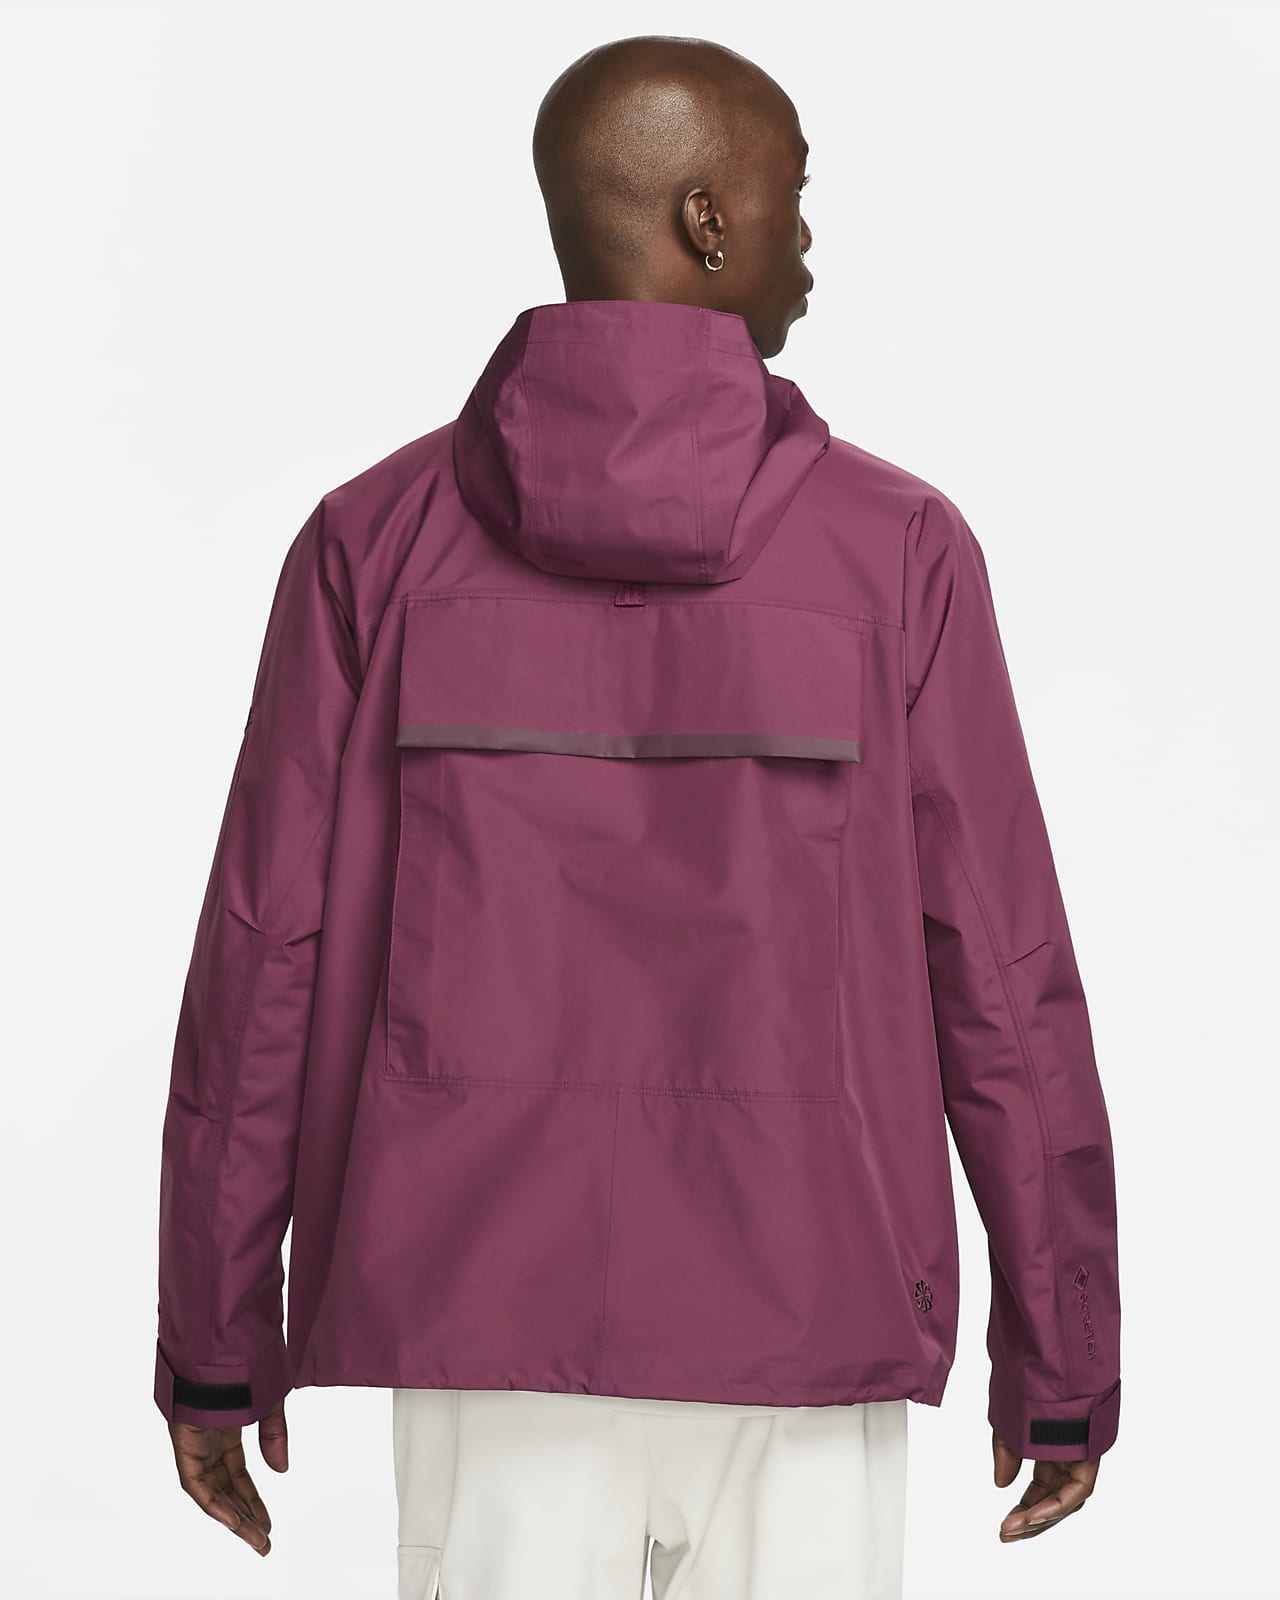 Nike Sportswear Storm-FIT ADV Tech Pack GORE-TEX Men's Hooded Jacket